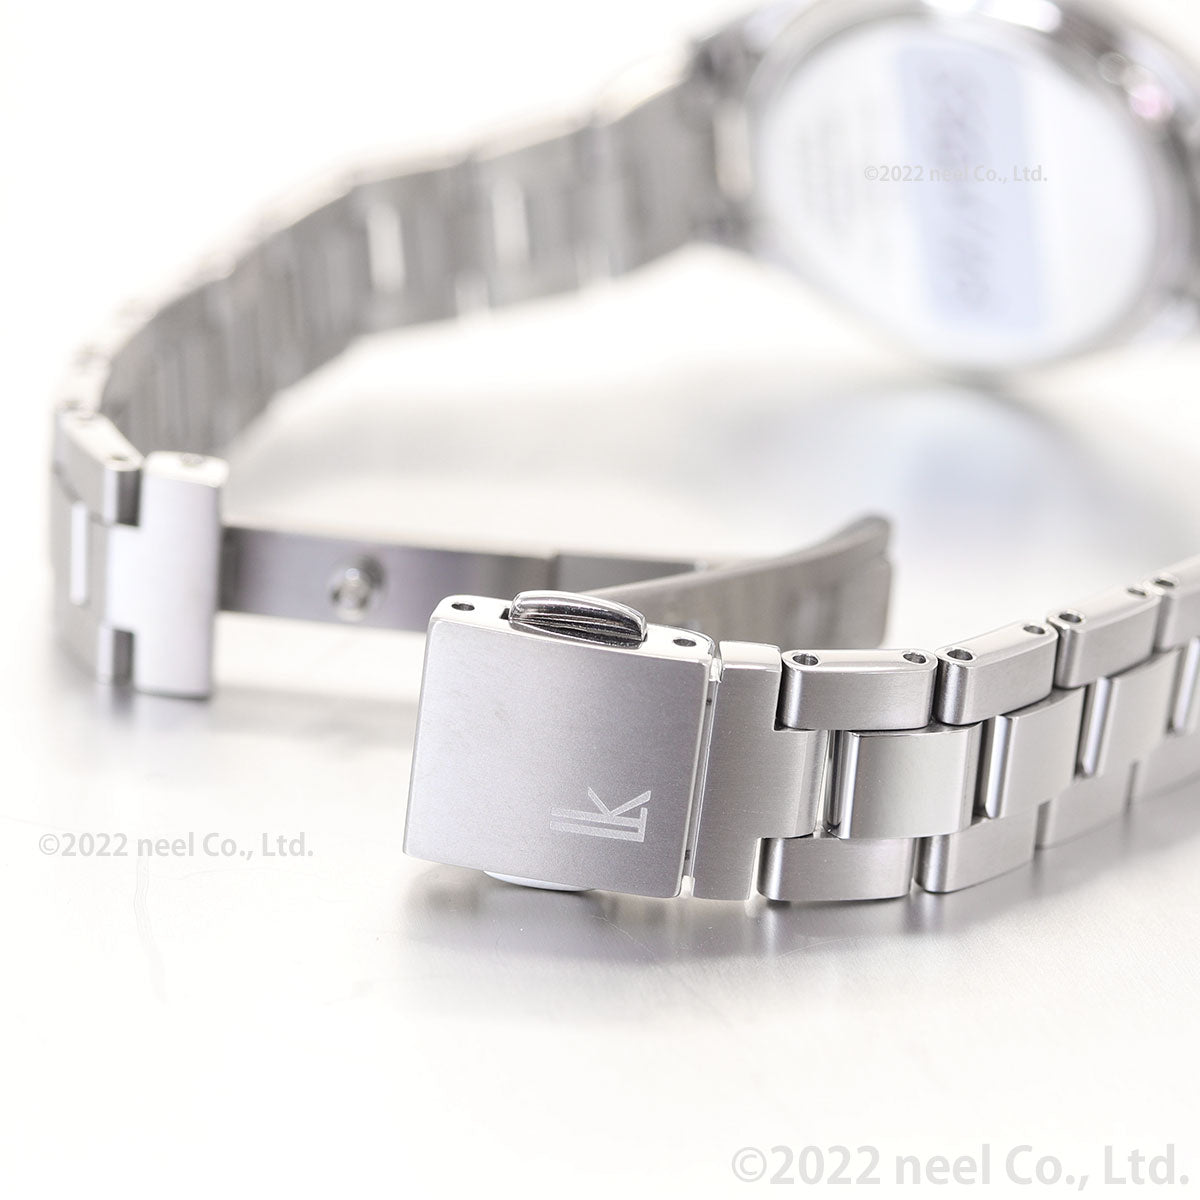 セイコー ルキア SEIKO LUKIA 電波 ソーラー 腕時計 レディース チタン SSQV103 レディコレクション Lady collection Renewal Models